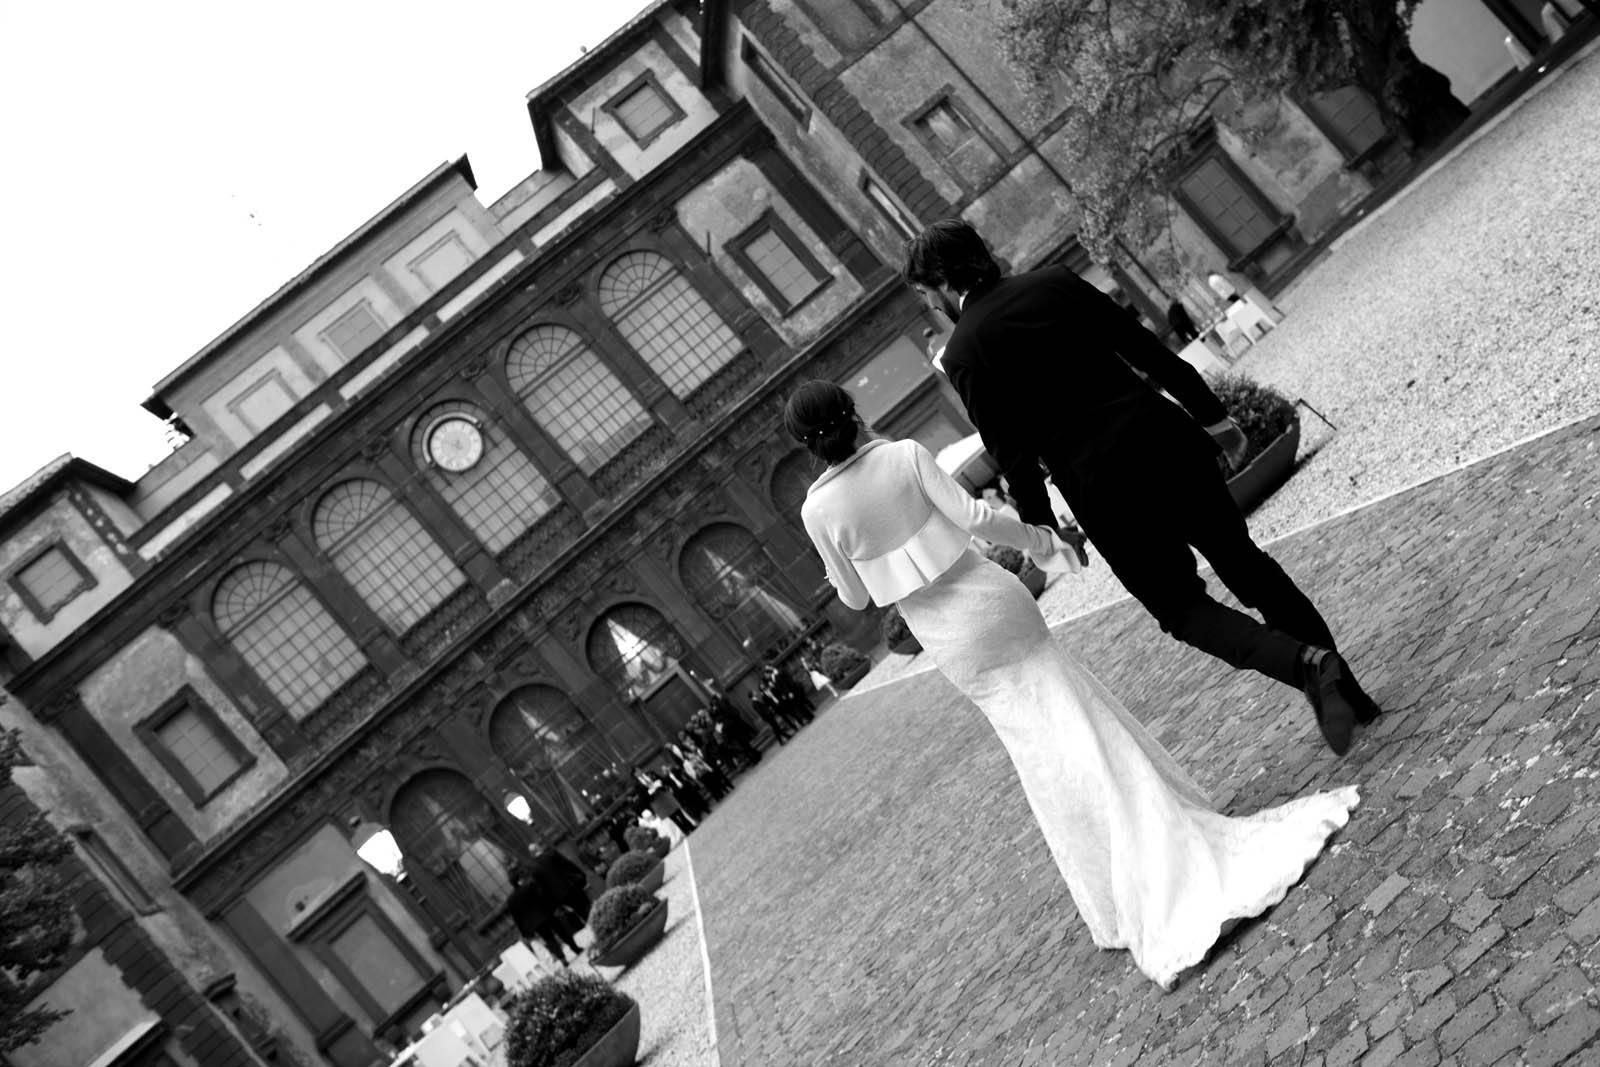 foto in bianco e nero e inclinata a 45 gradi con due sposi di spalle che entrano a Villa Mondragone